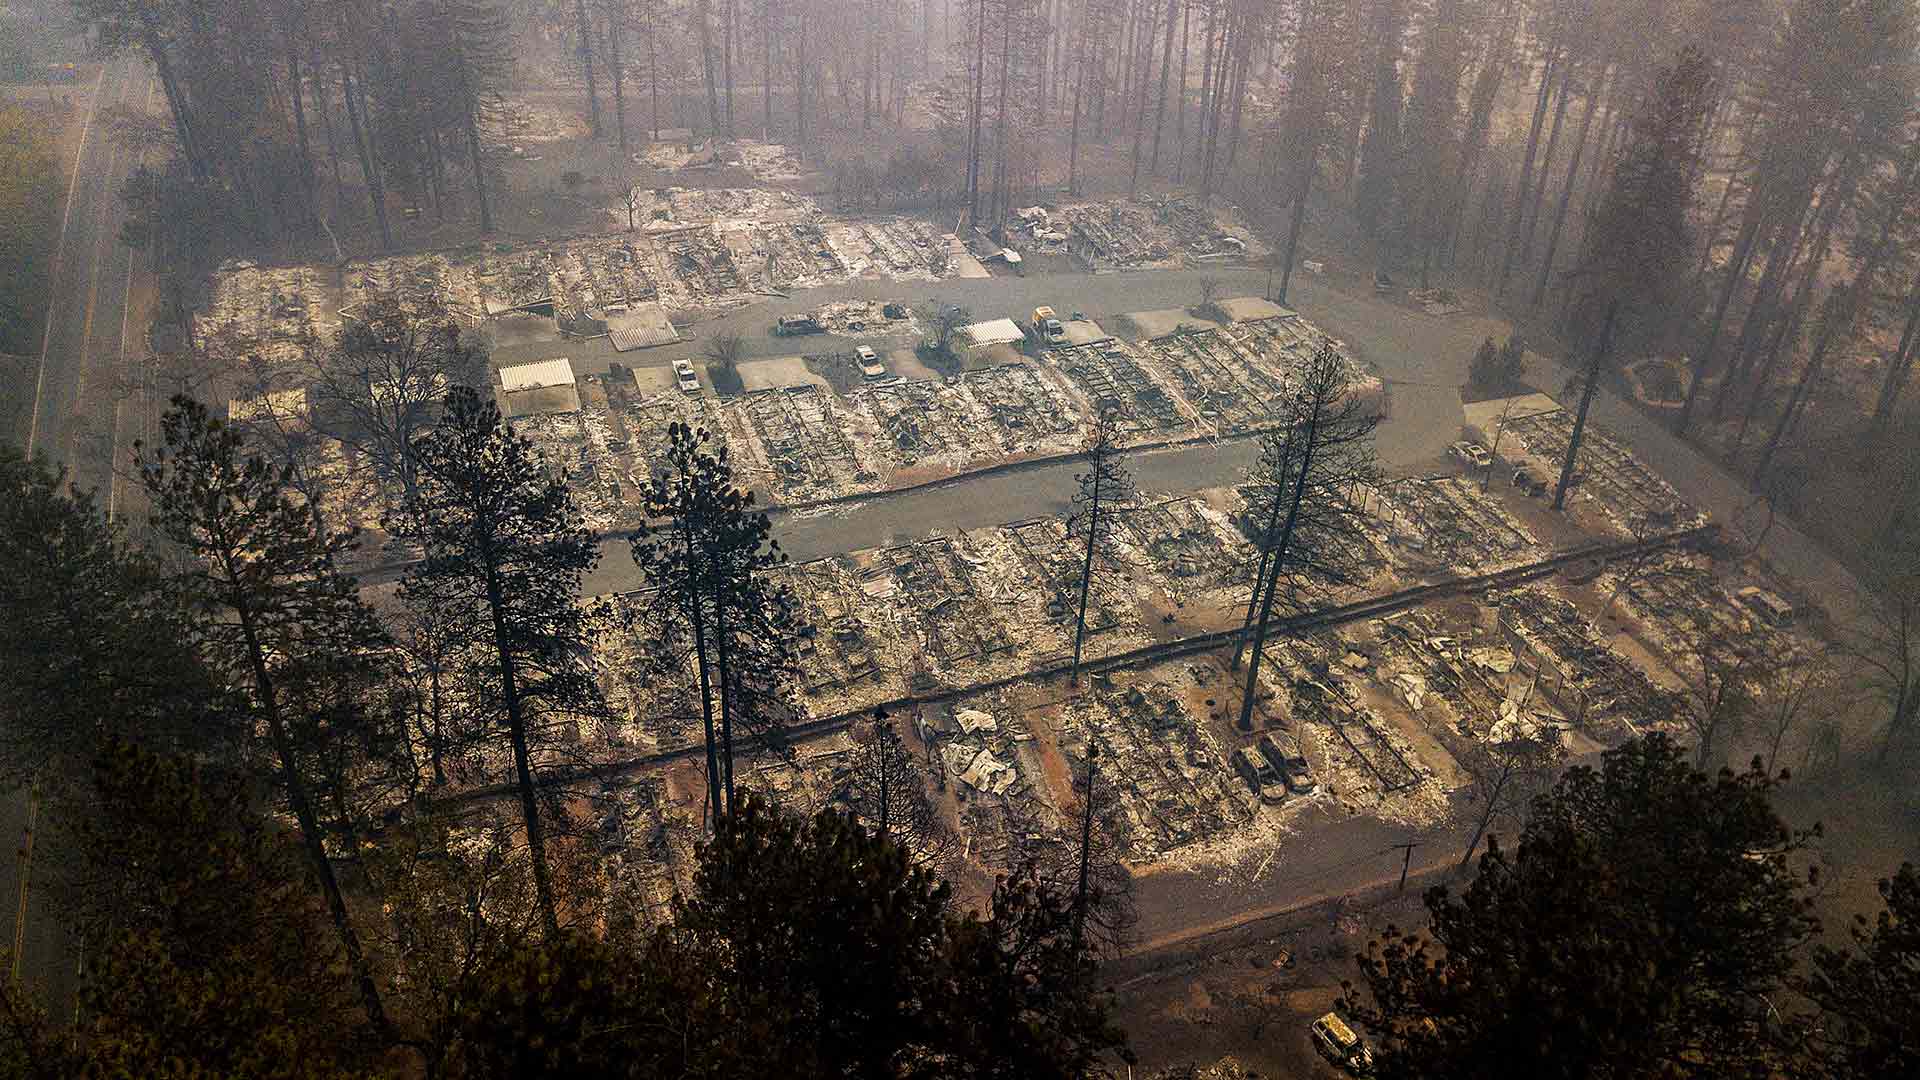 La eléctrica PG&E admite ser la causa "probable" del incendio que dejó más de 80 muertos en California